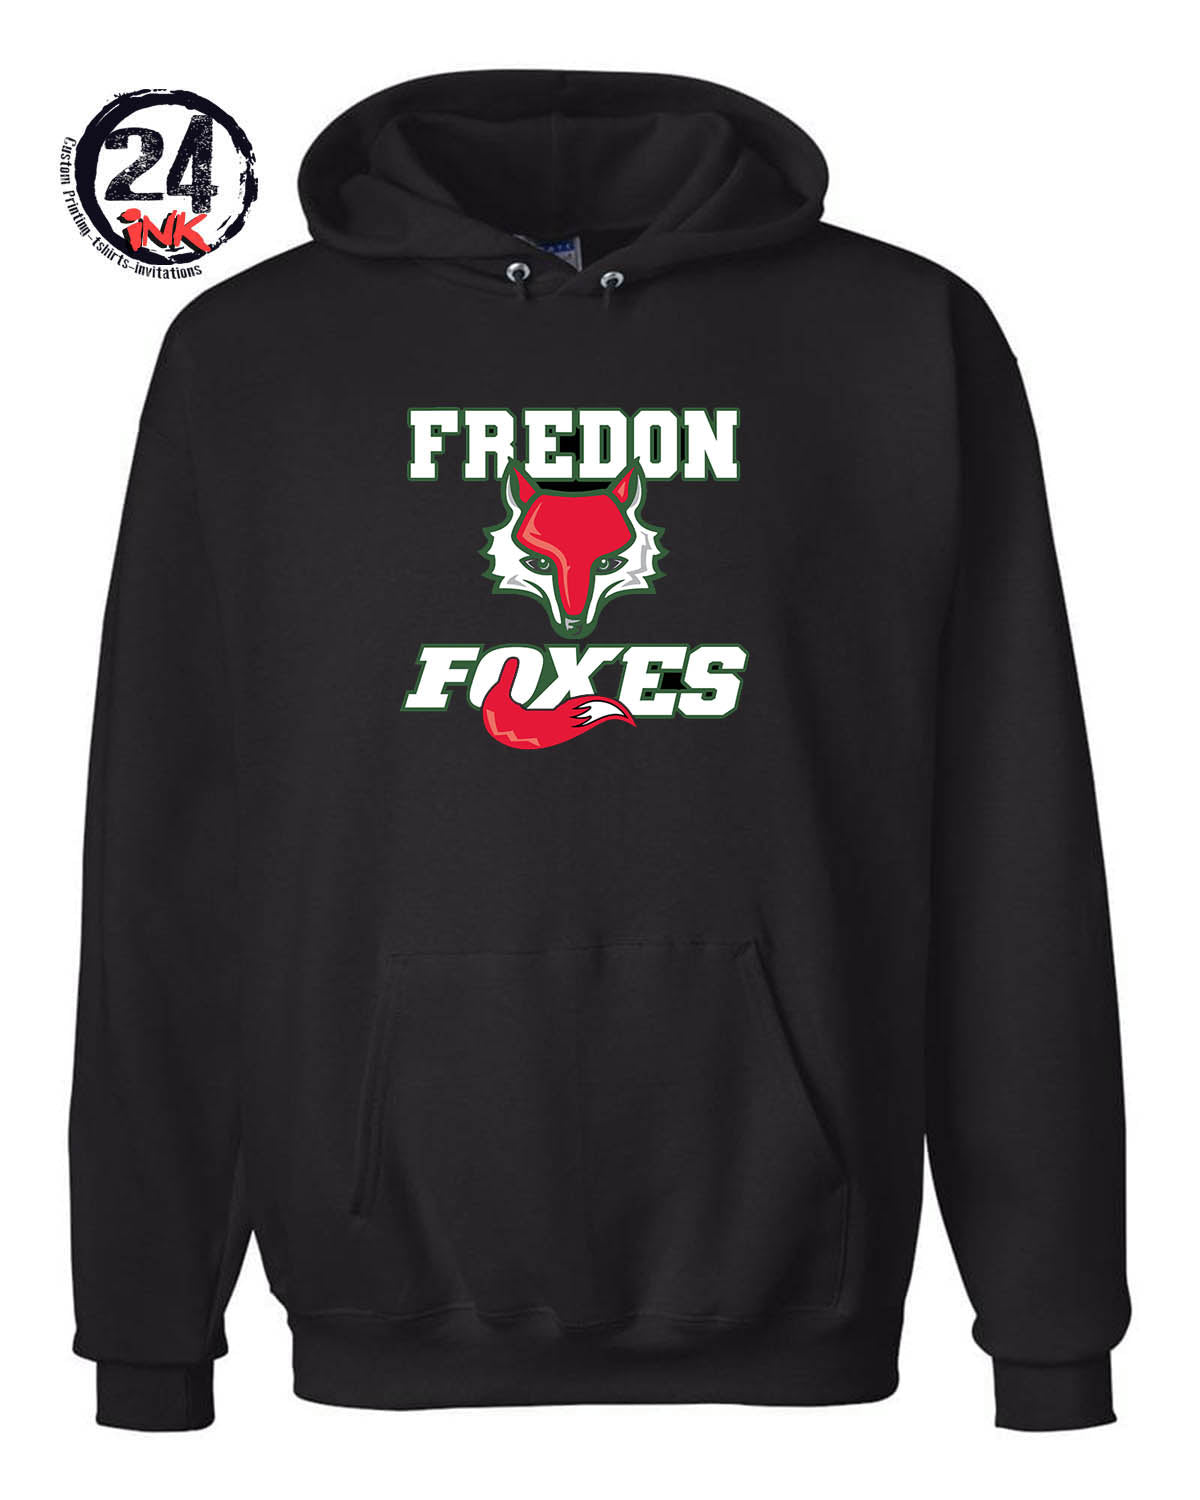 Fredon Foxes Hooded Sweatshirt